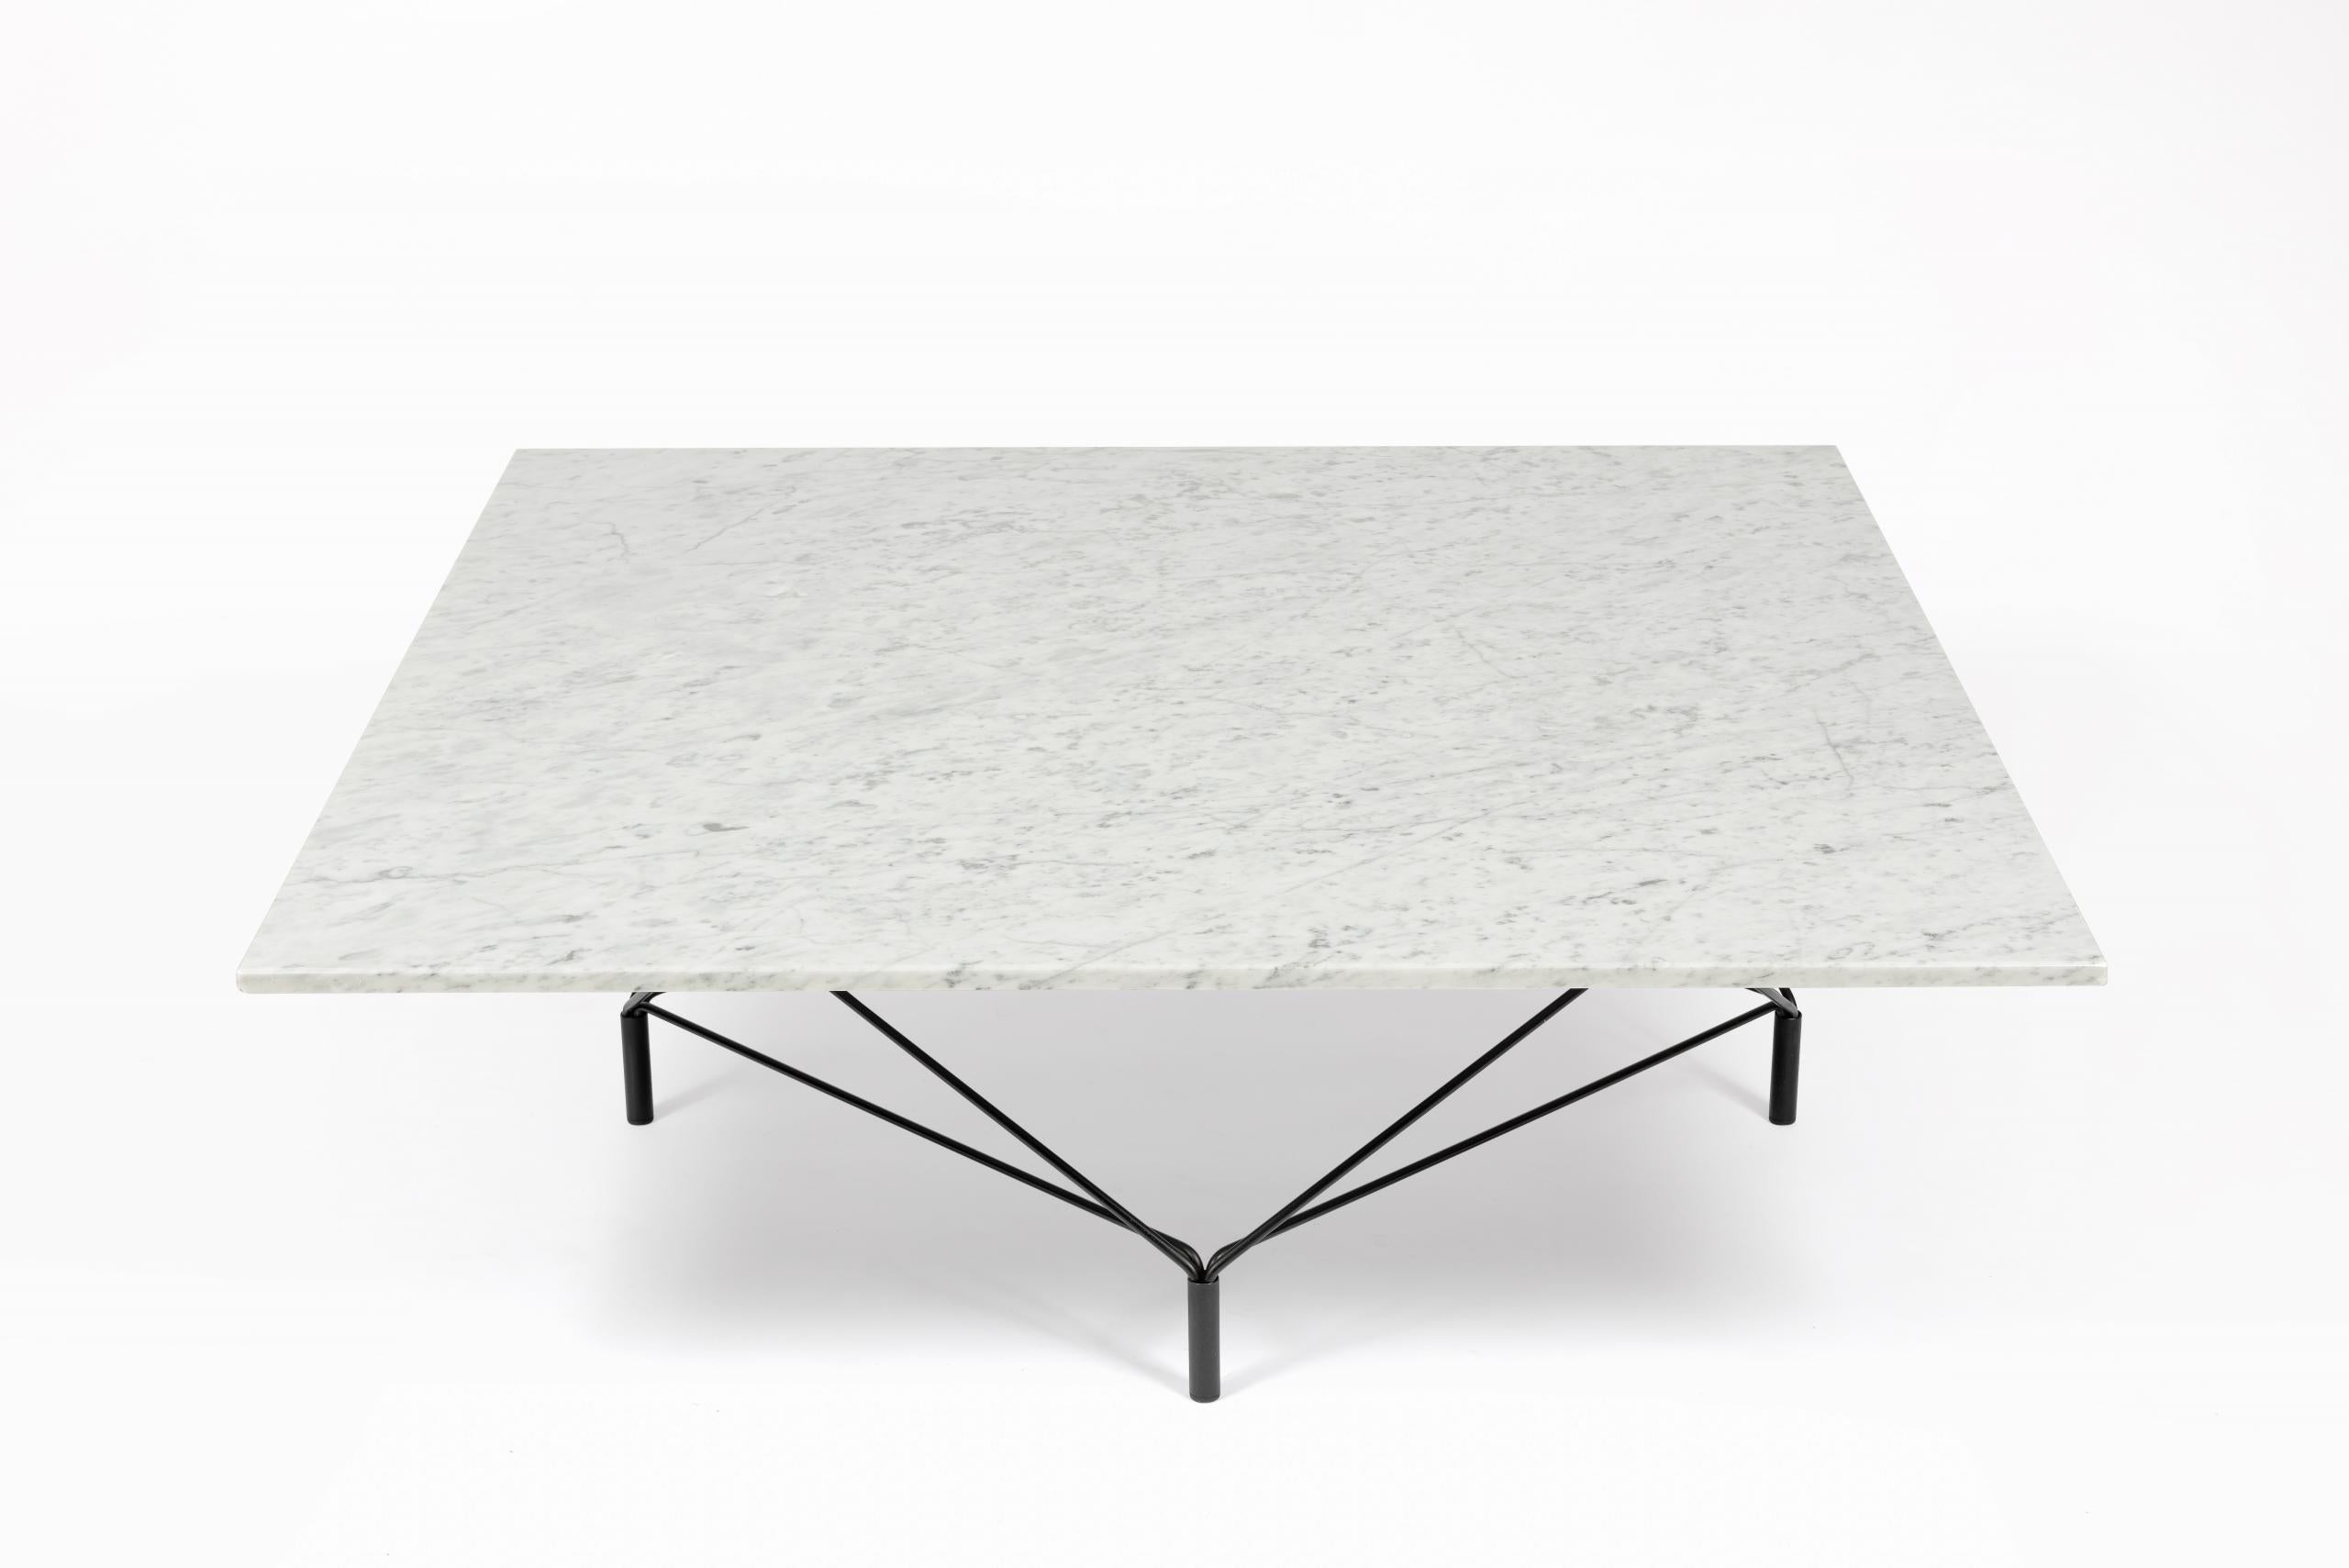 Table basse du designer danois Andréas Hansen pour Eilersen, 1960.

Modèle “Spider” avec piètement en acier laqué noir et plateau en marbre blanc.